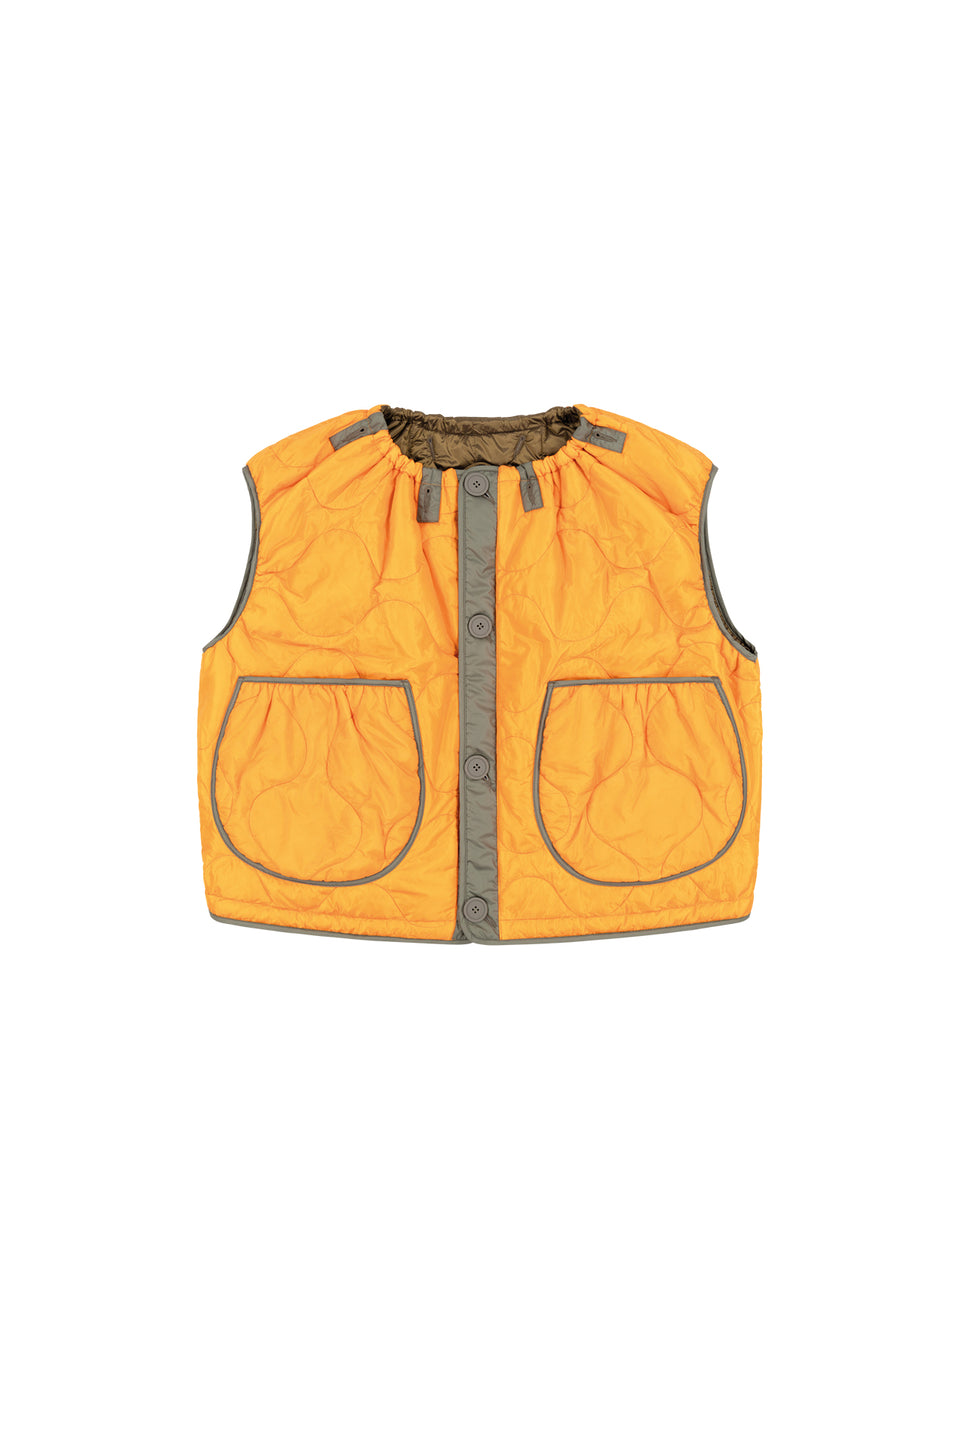 Parachute Quilt Vest - Antique Gold / Clementine (listing page thumbnail)